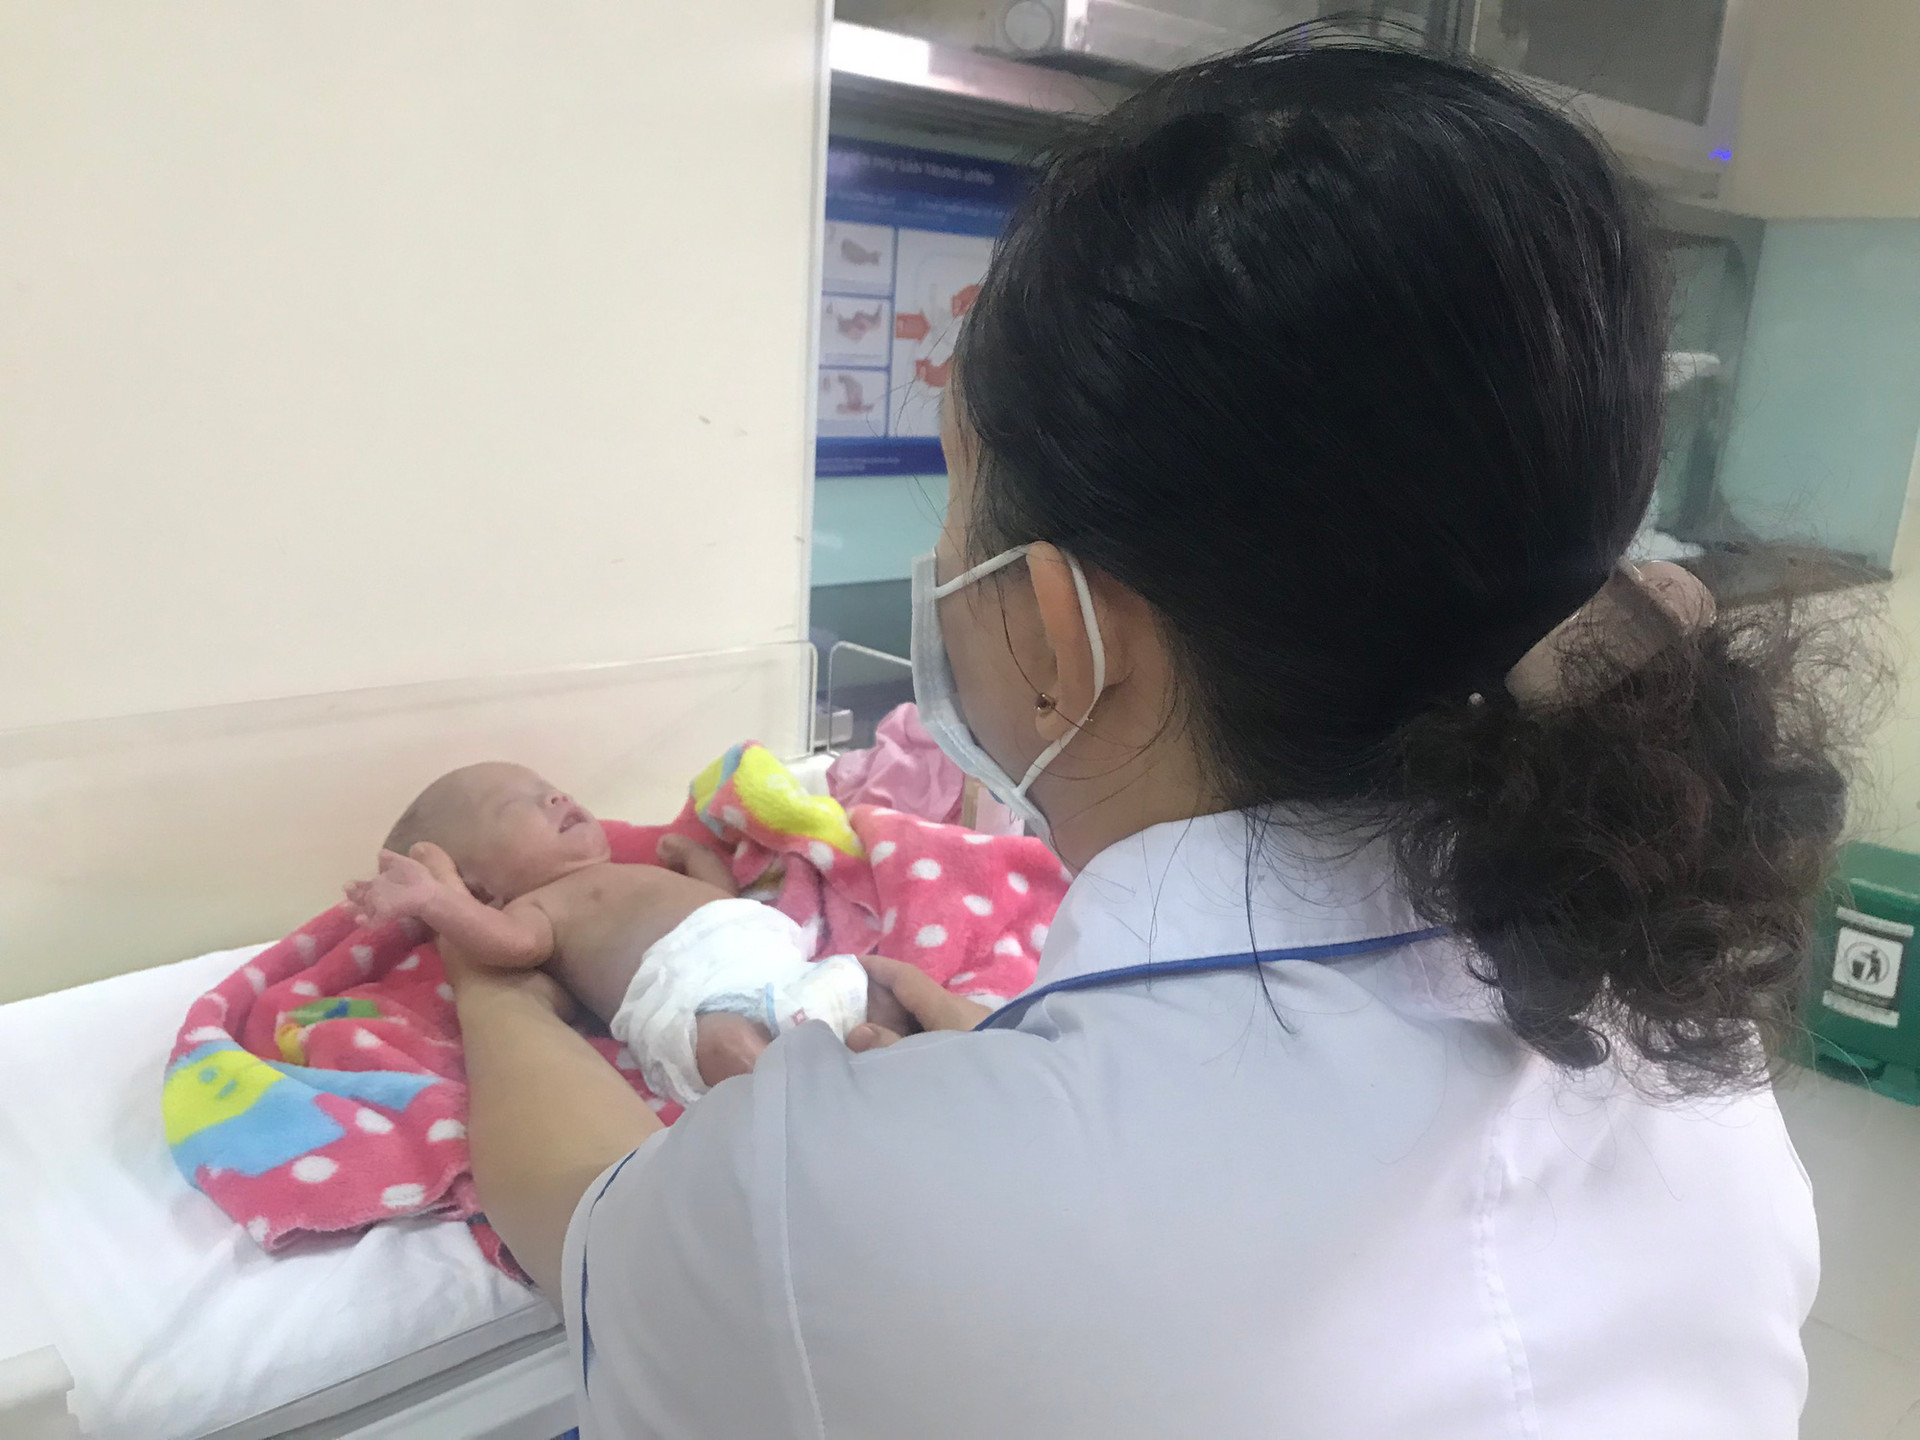 Kỳ diệu, cứu sống và nuôi dưỡng thành công trẻ sơ sinh nặng 400gram đầu tiên tại Việt Nam   - Ảnh 3.